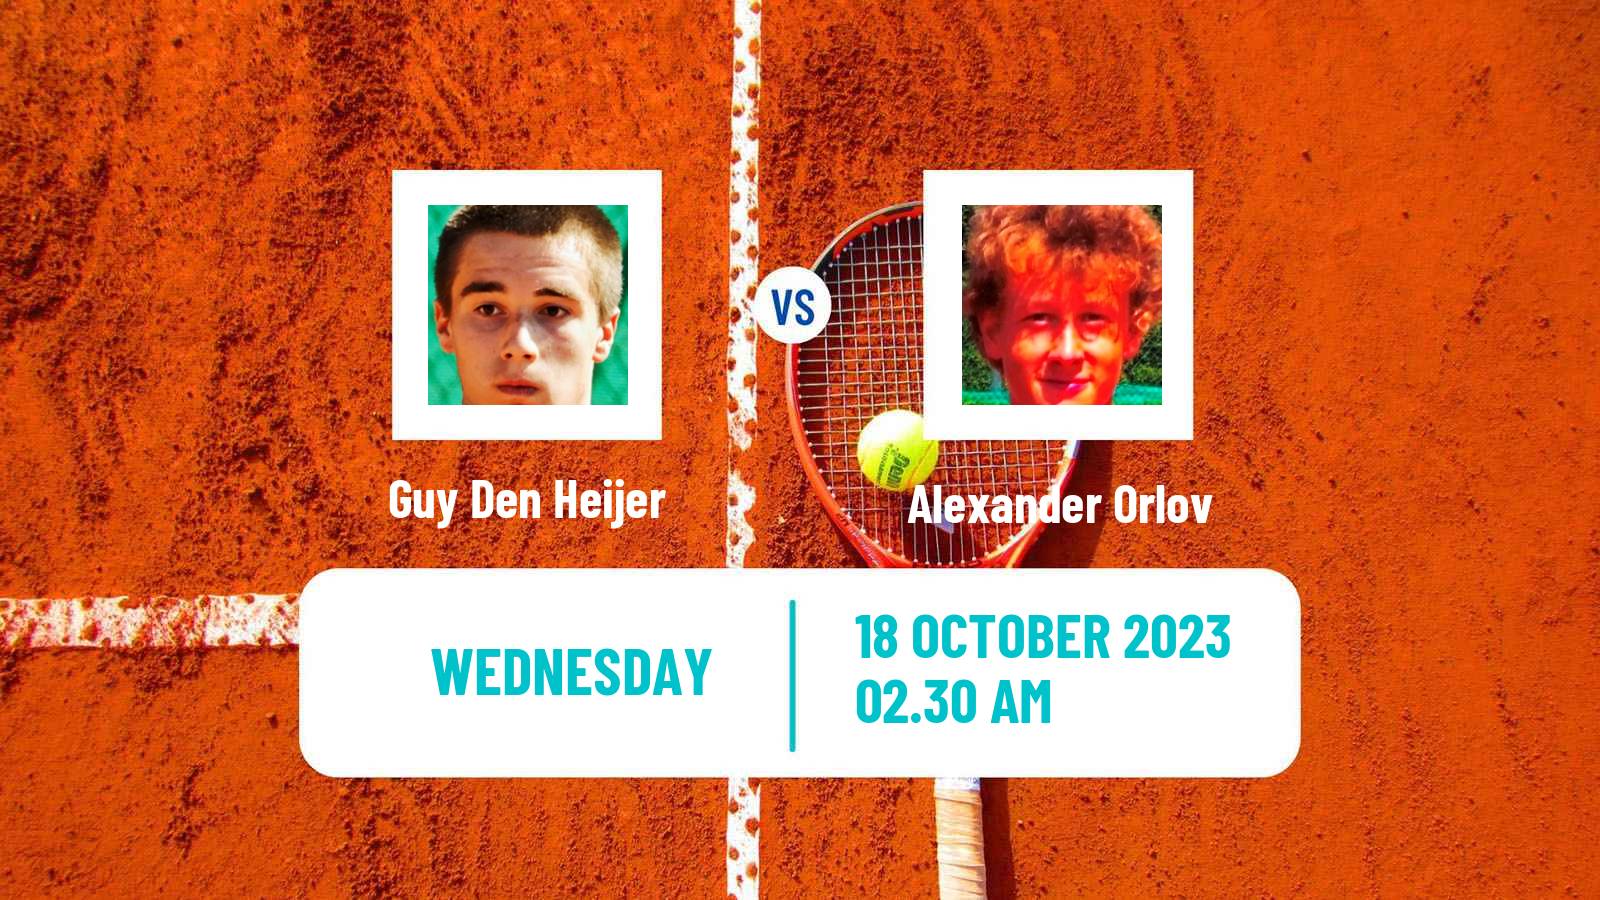 Tennis ITF M15 Heraklion 3 Men Guy Den Heijer - Alexander Orlov